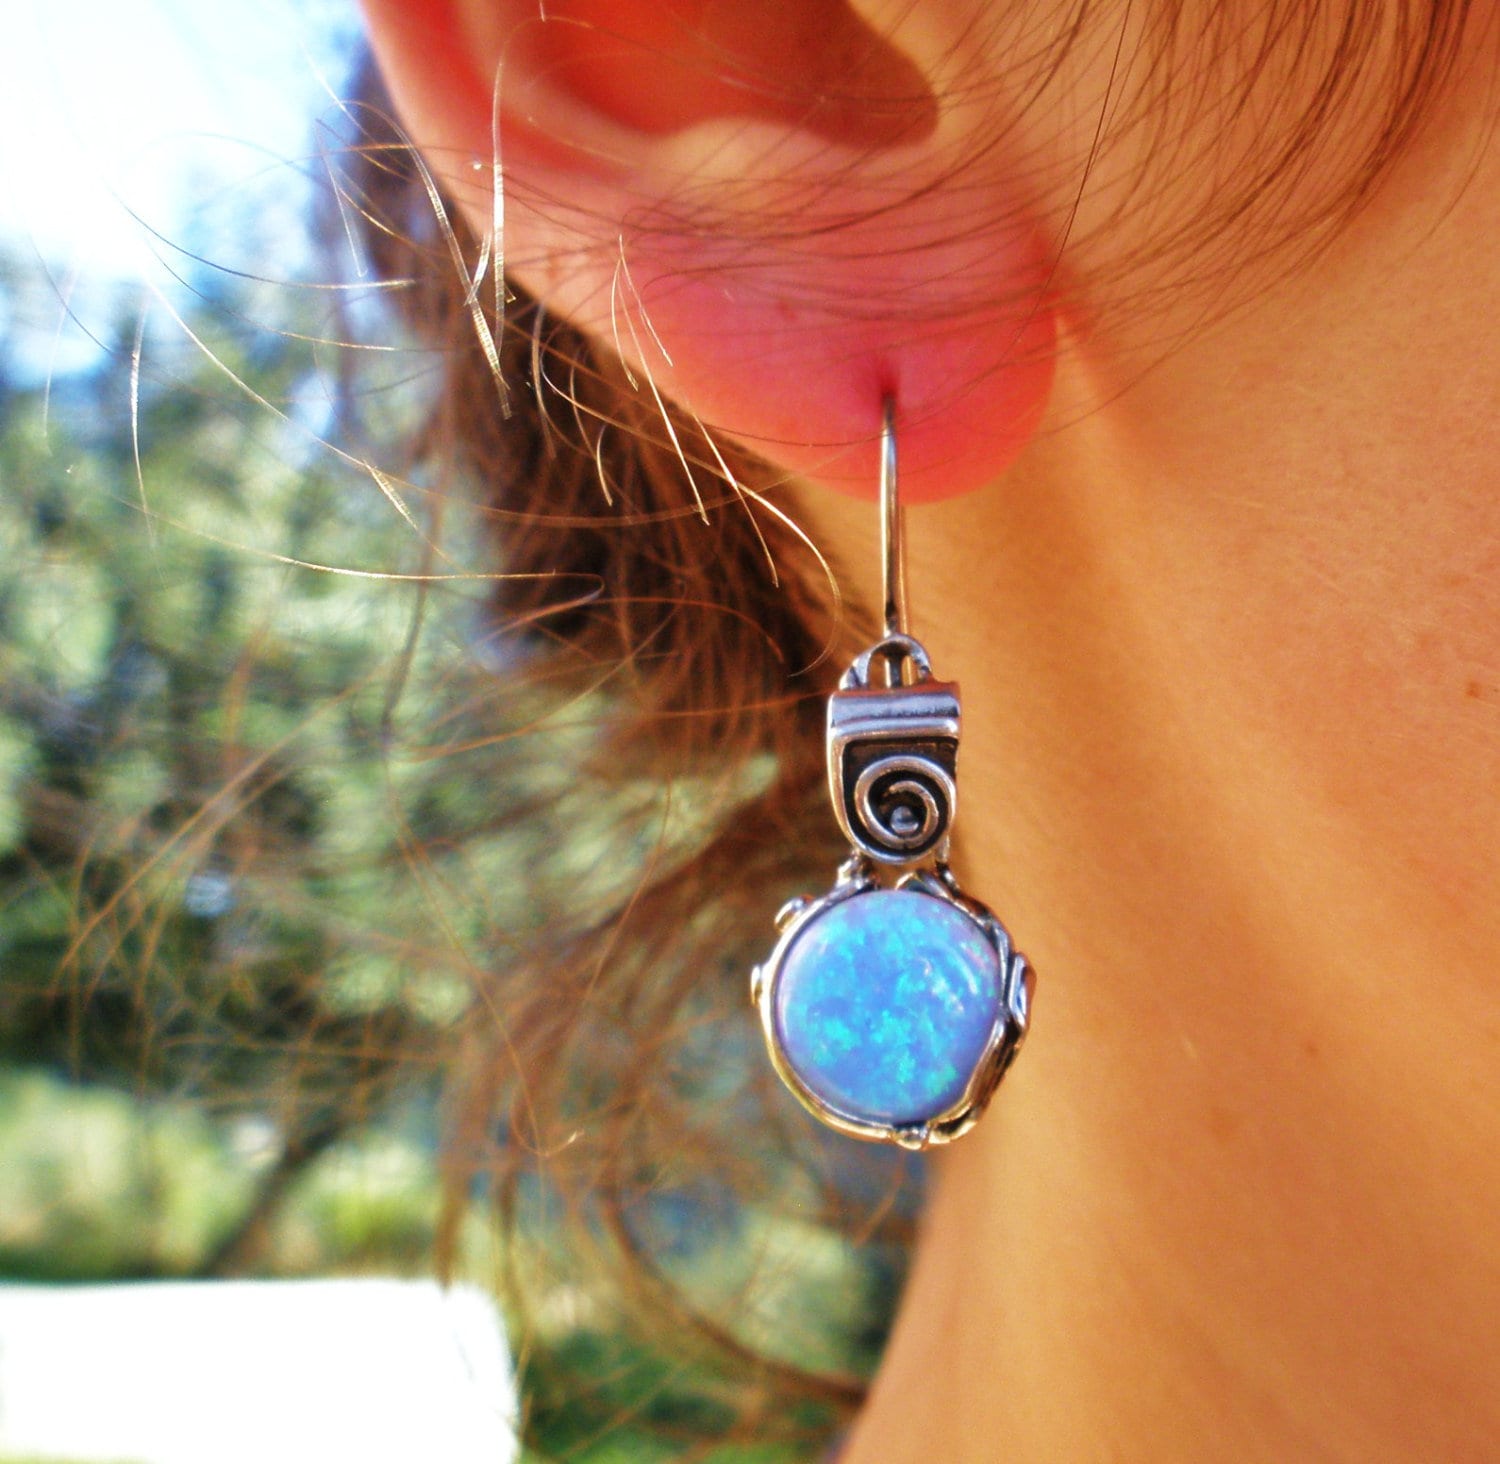 Frauen Silber Baumeln Edelstein Ohrring, Zierliche Runde Feminine Blauen Stein Ohrring Für Geschenk von Porans